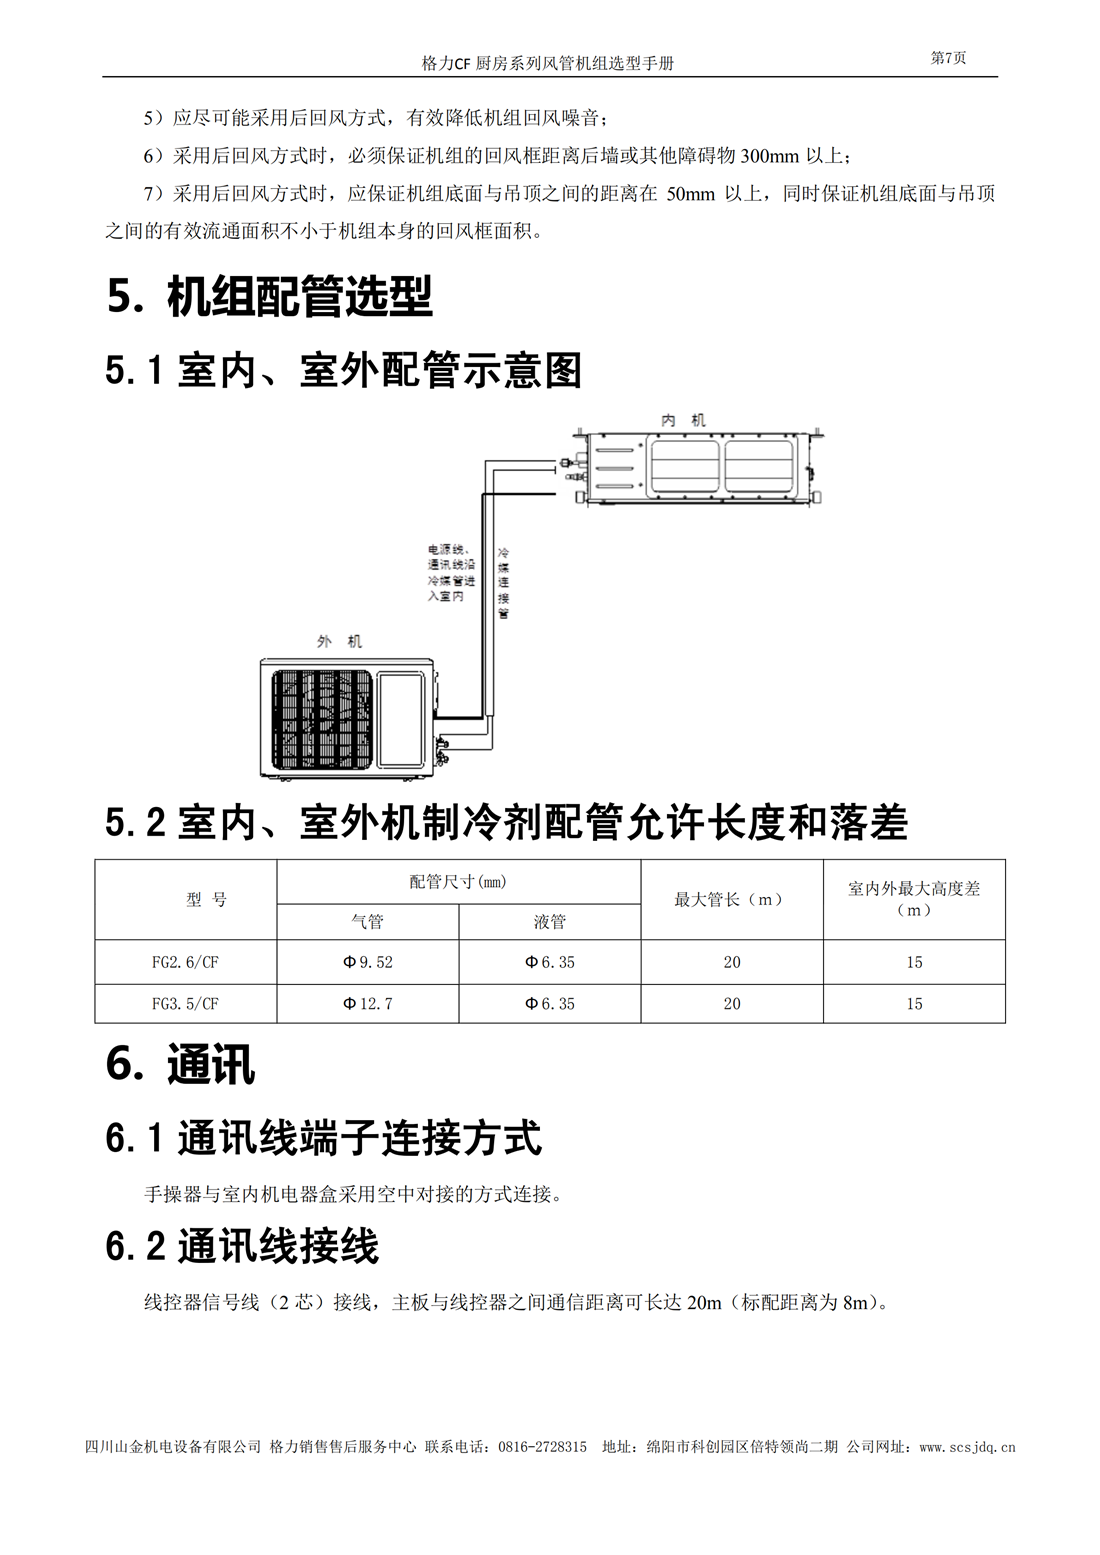 CF厨房系列风管送风式空调机组选型手册_08.png